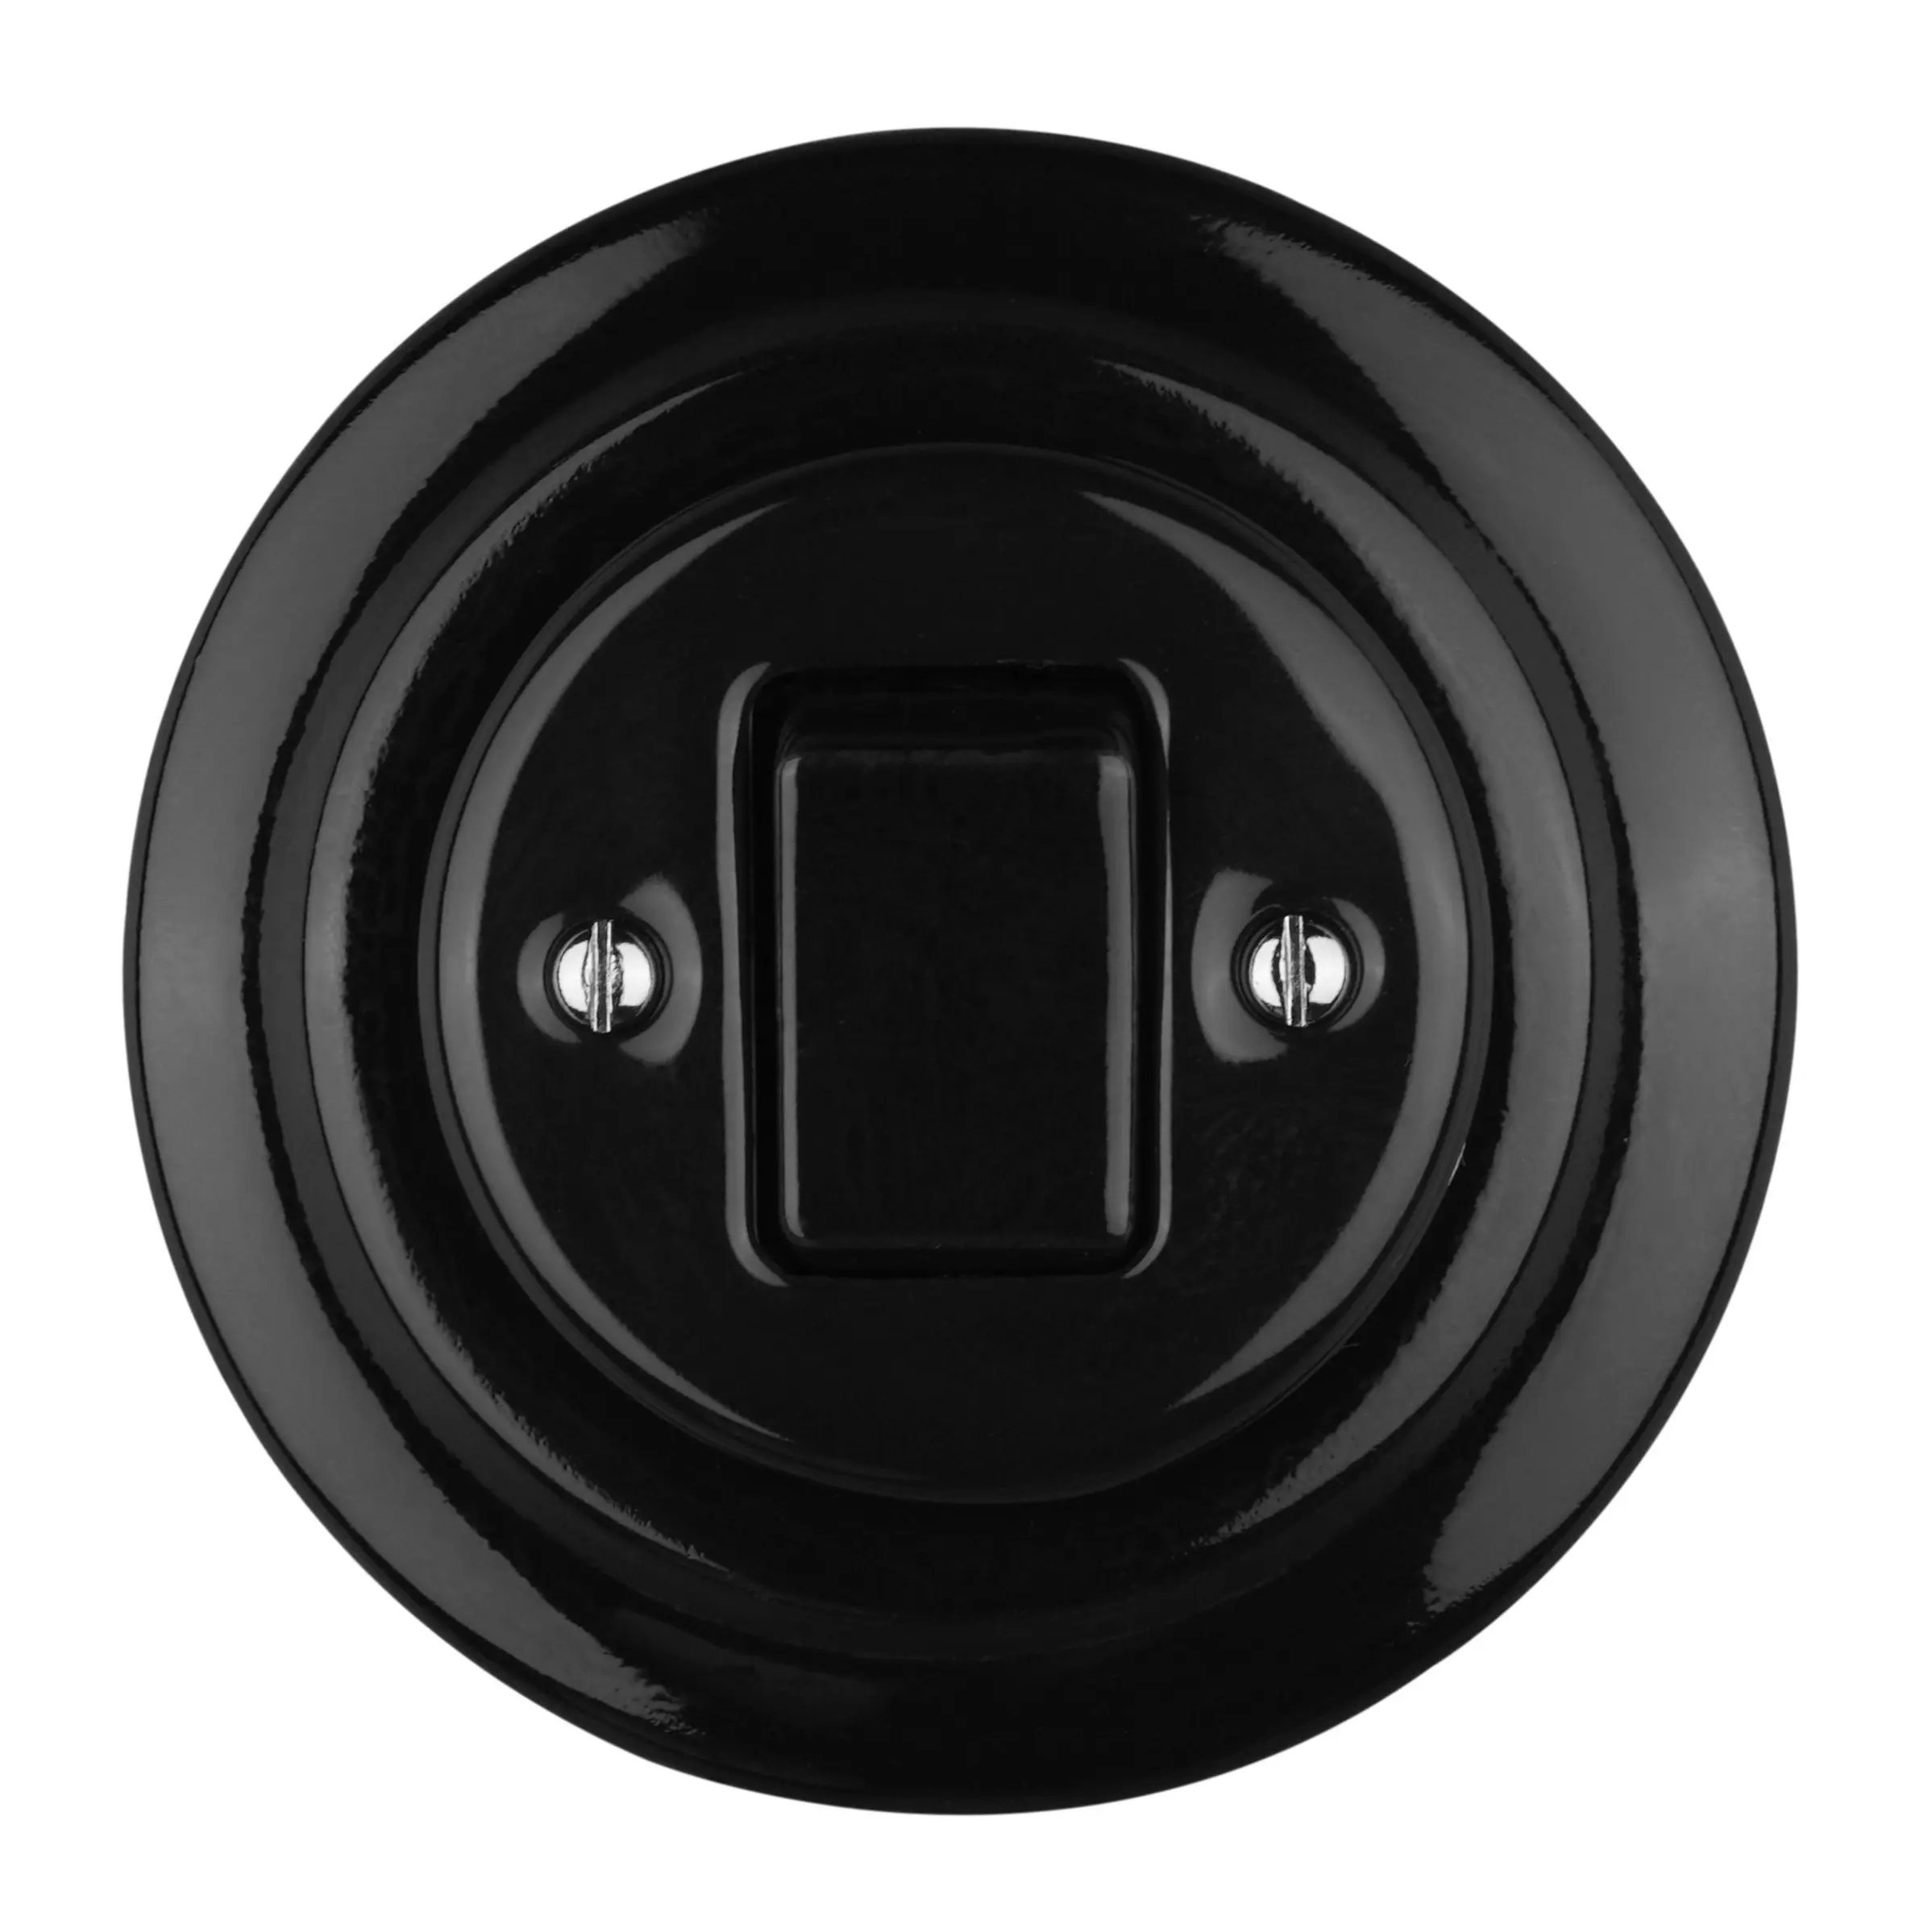 Interrupteurs muraux à bouton-poussoir intermédiaires encastrés OEM en céramique de haute qualité pour la décoration de la maison